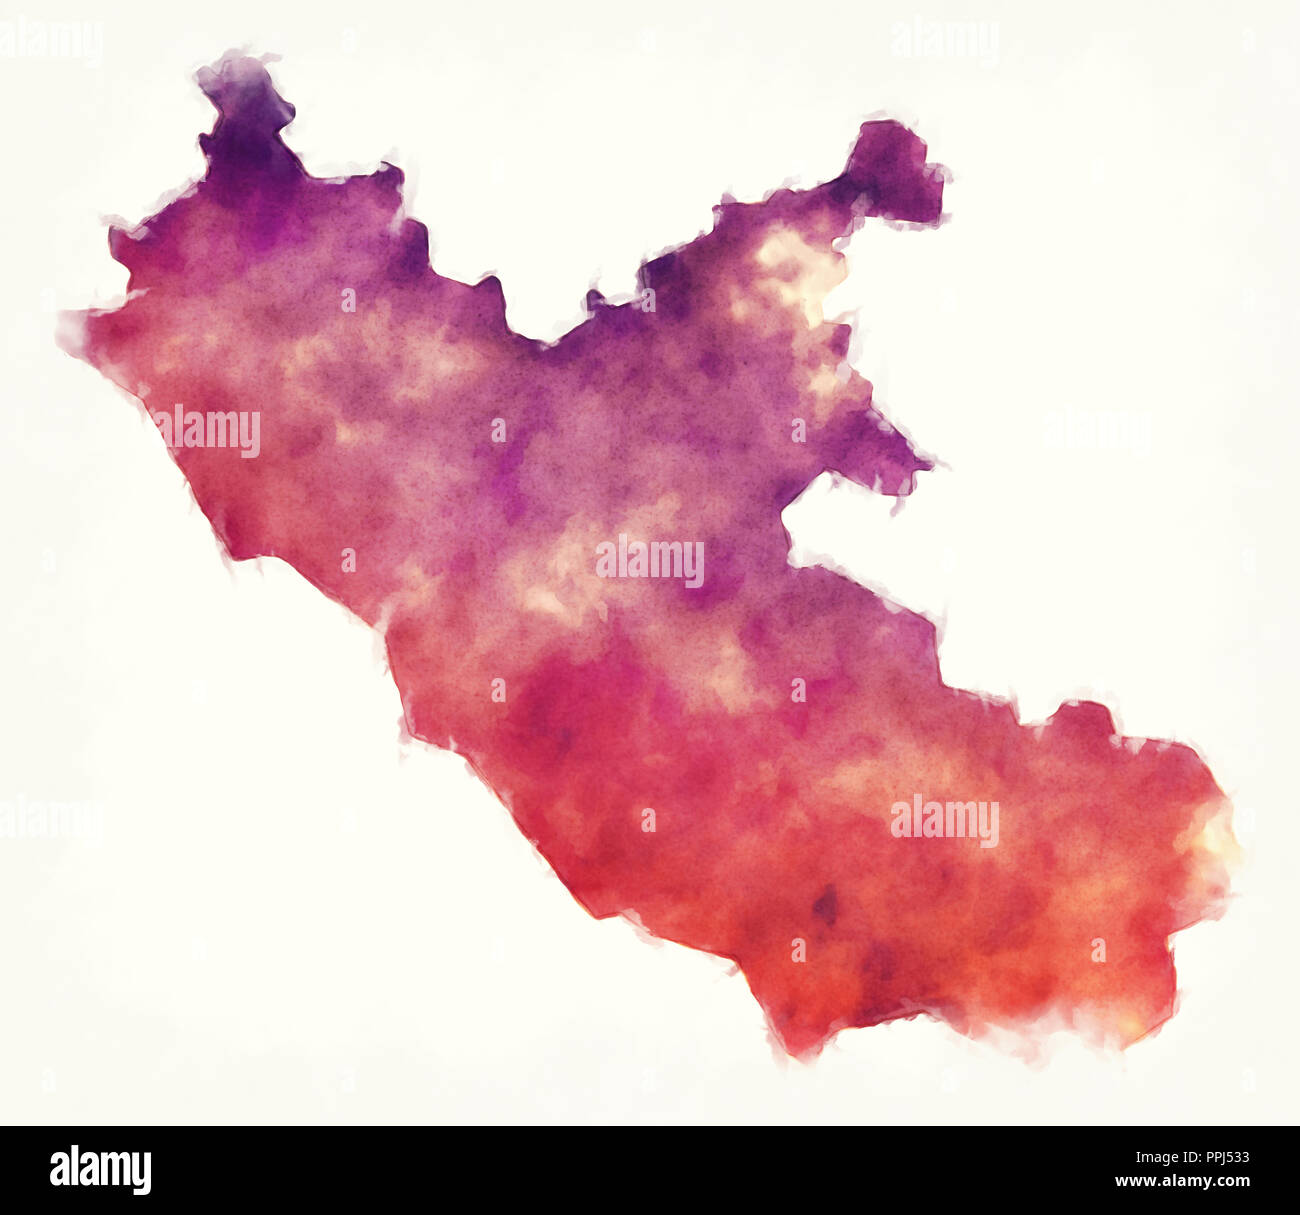 Région du Latium aquarelle carte de l'Italie devant un fond blanc Banque D'Images